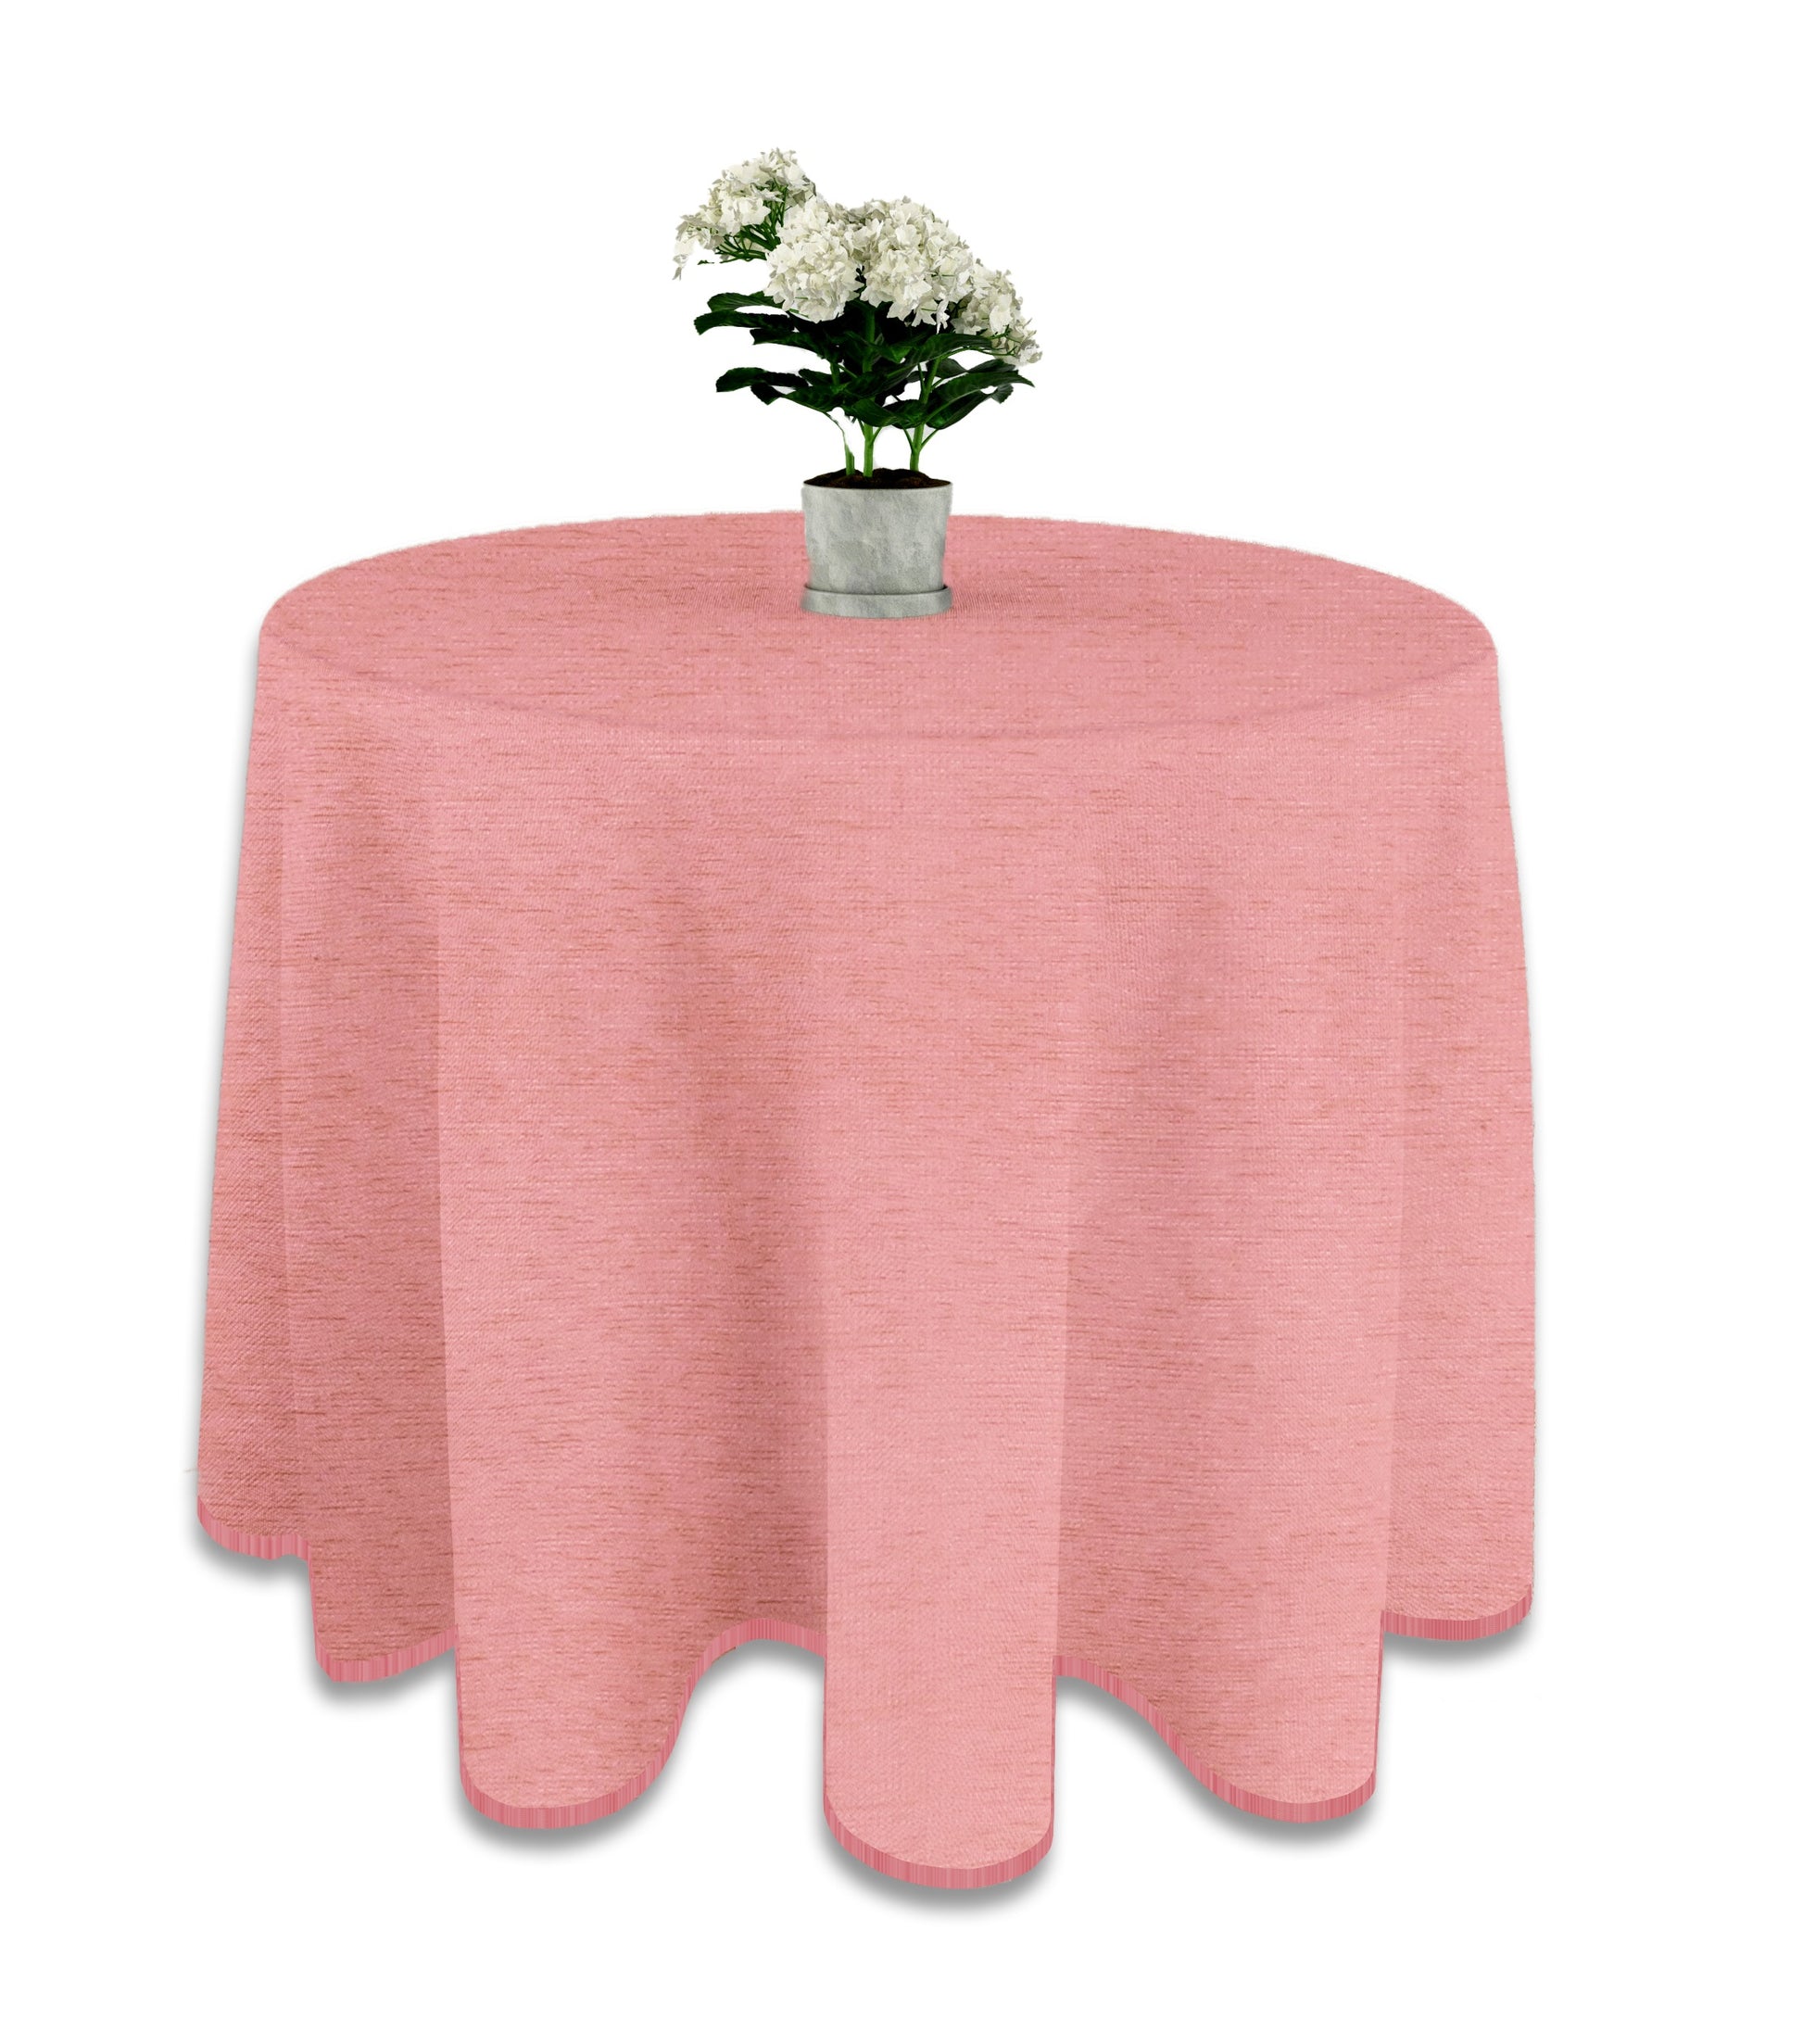 Falda mesa camilla rectangular – LUA VIKA